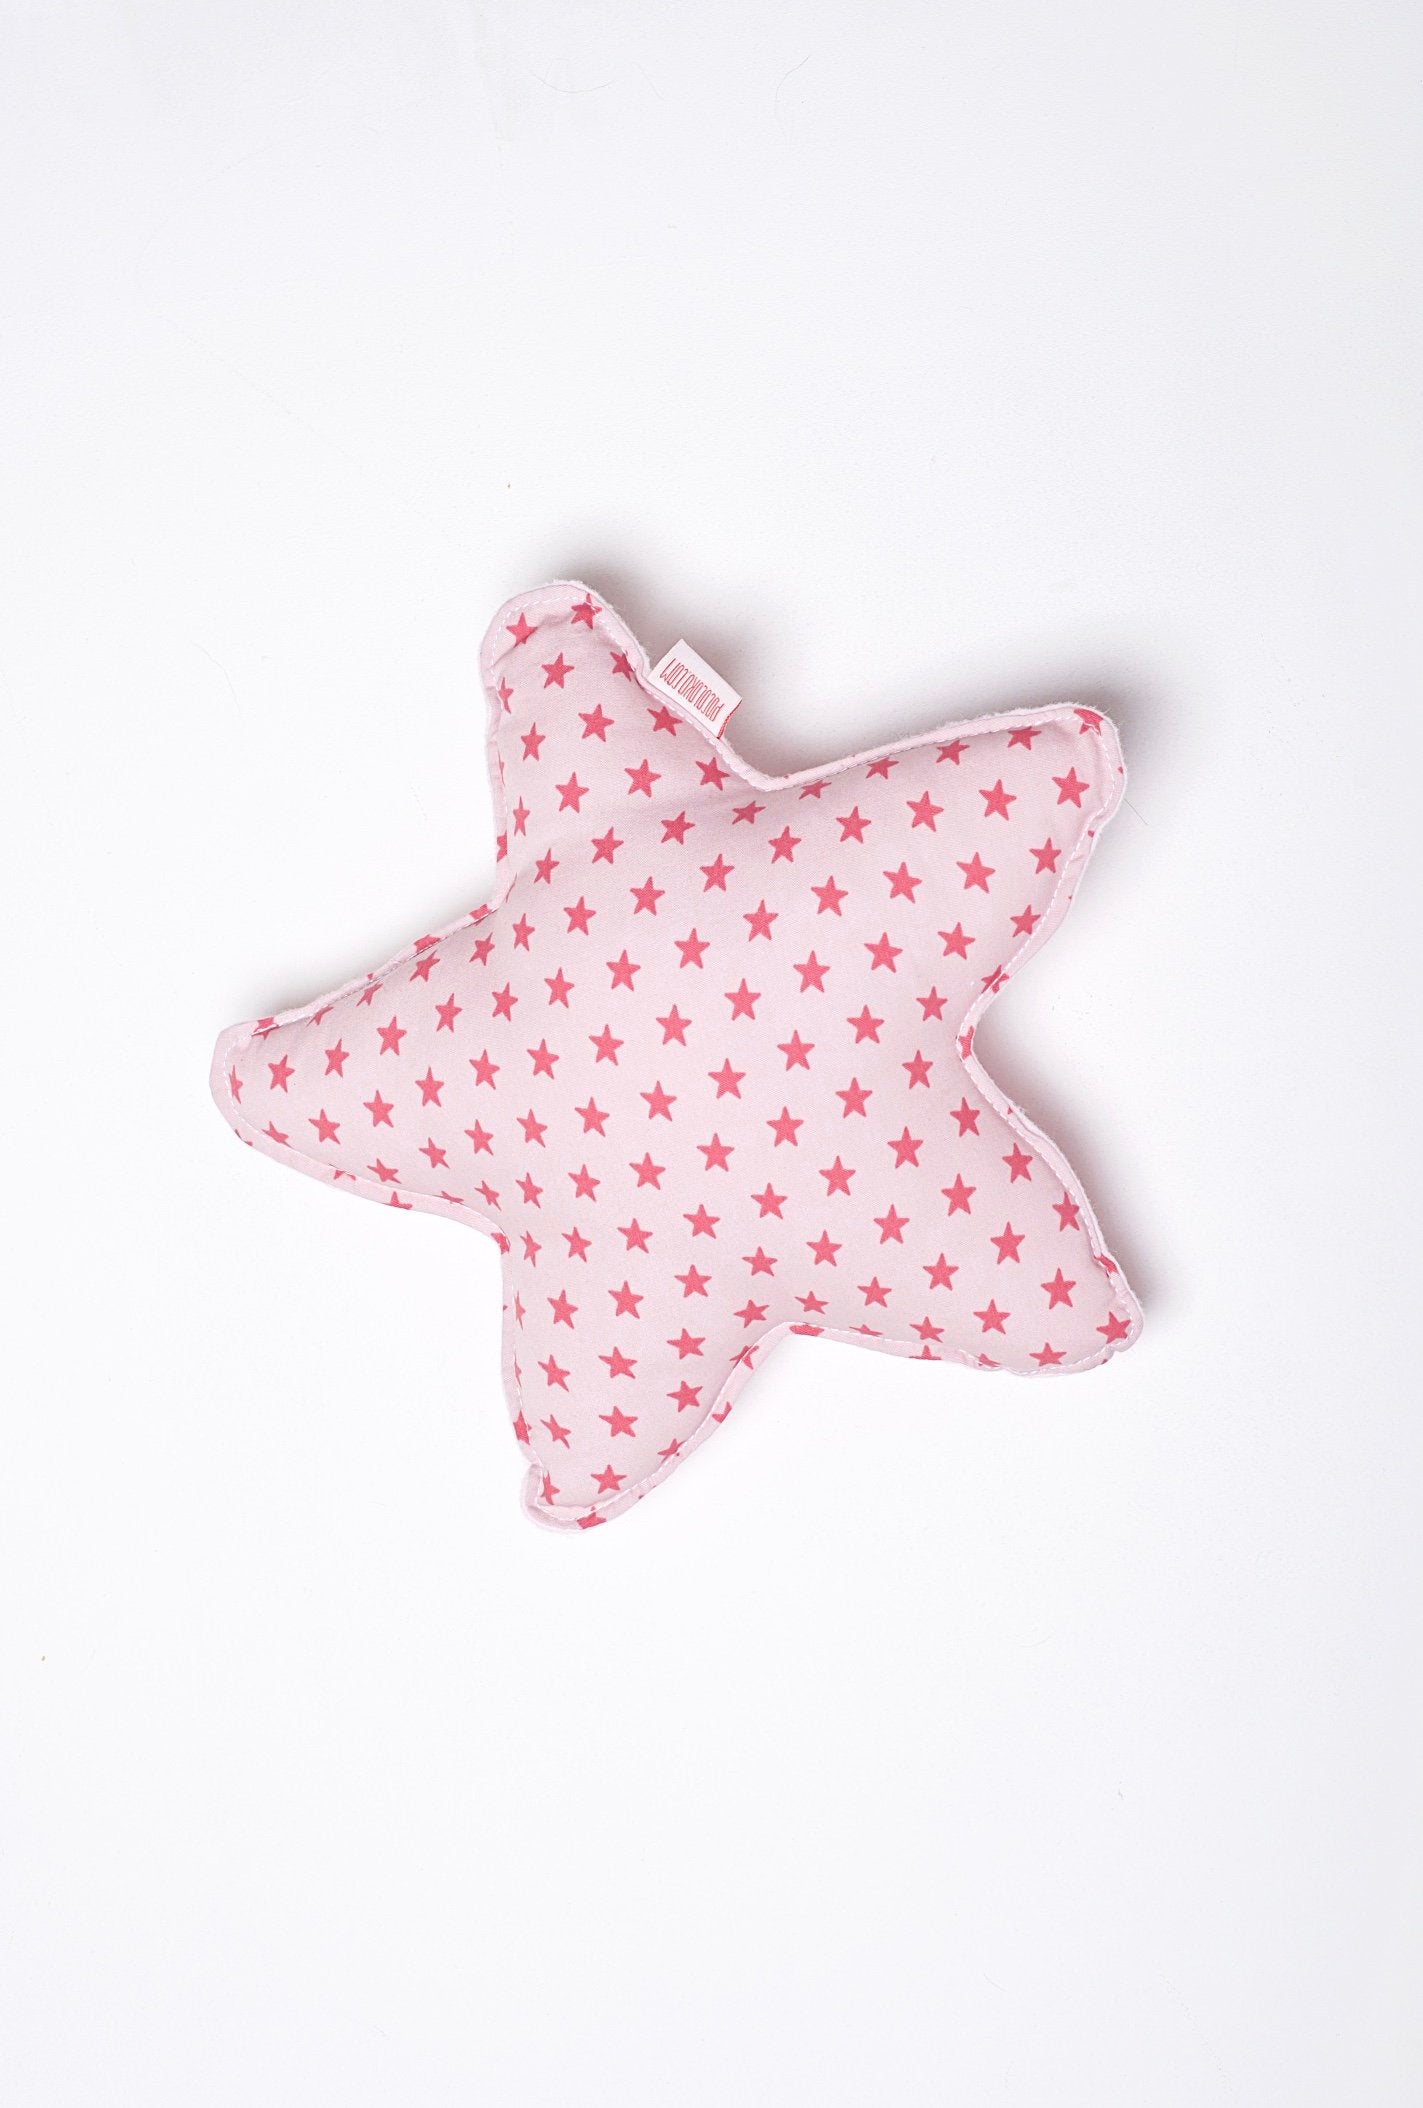 Manta y estrella stars pink - Pocoloko